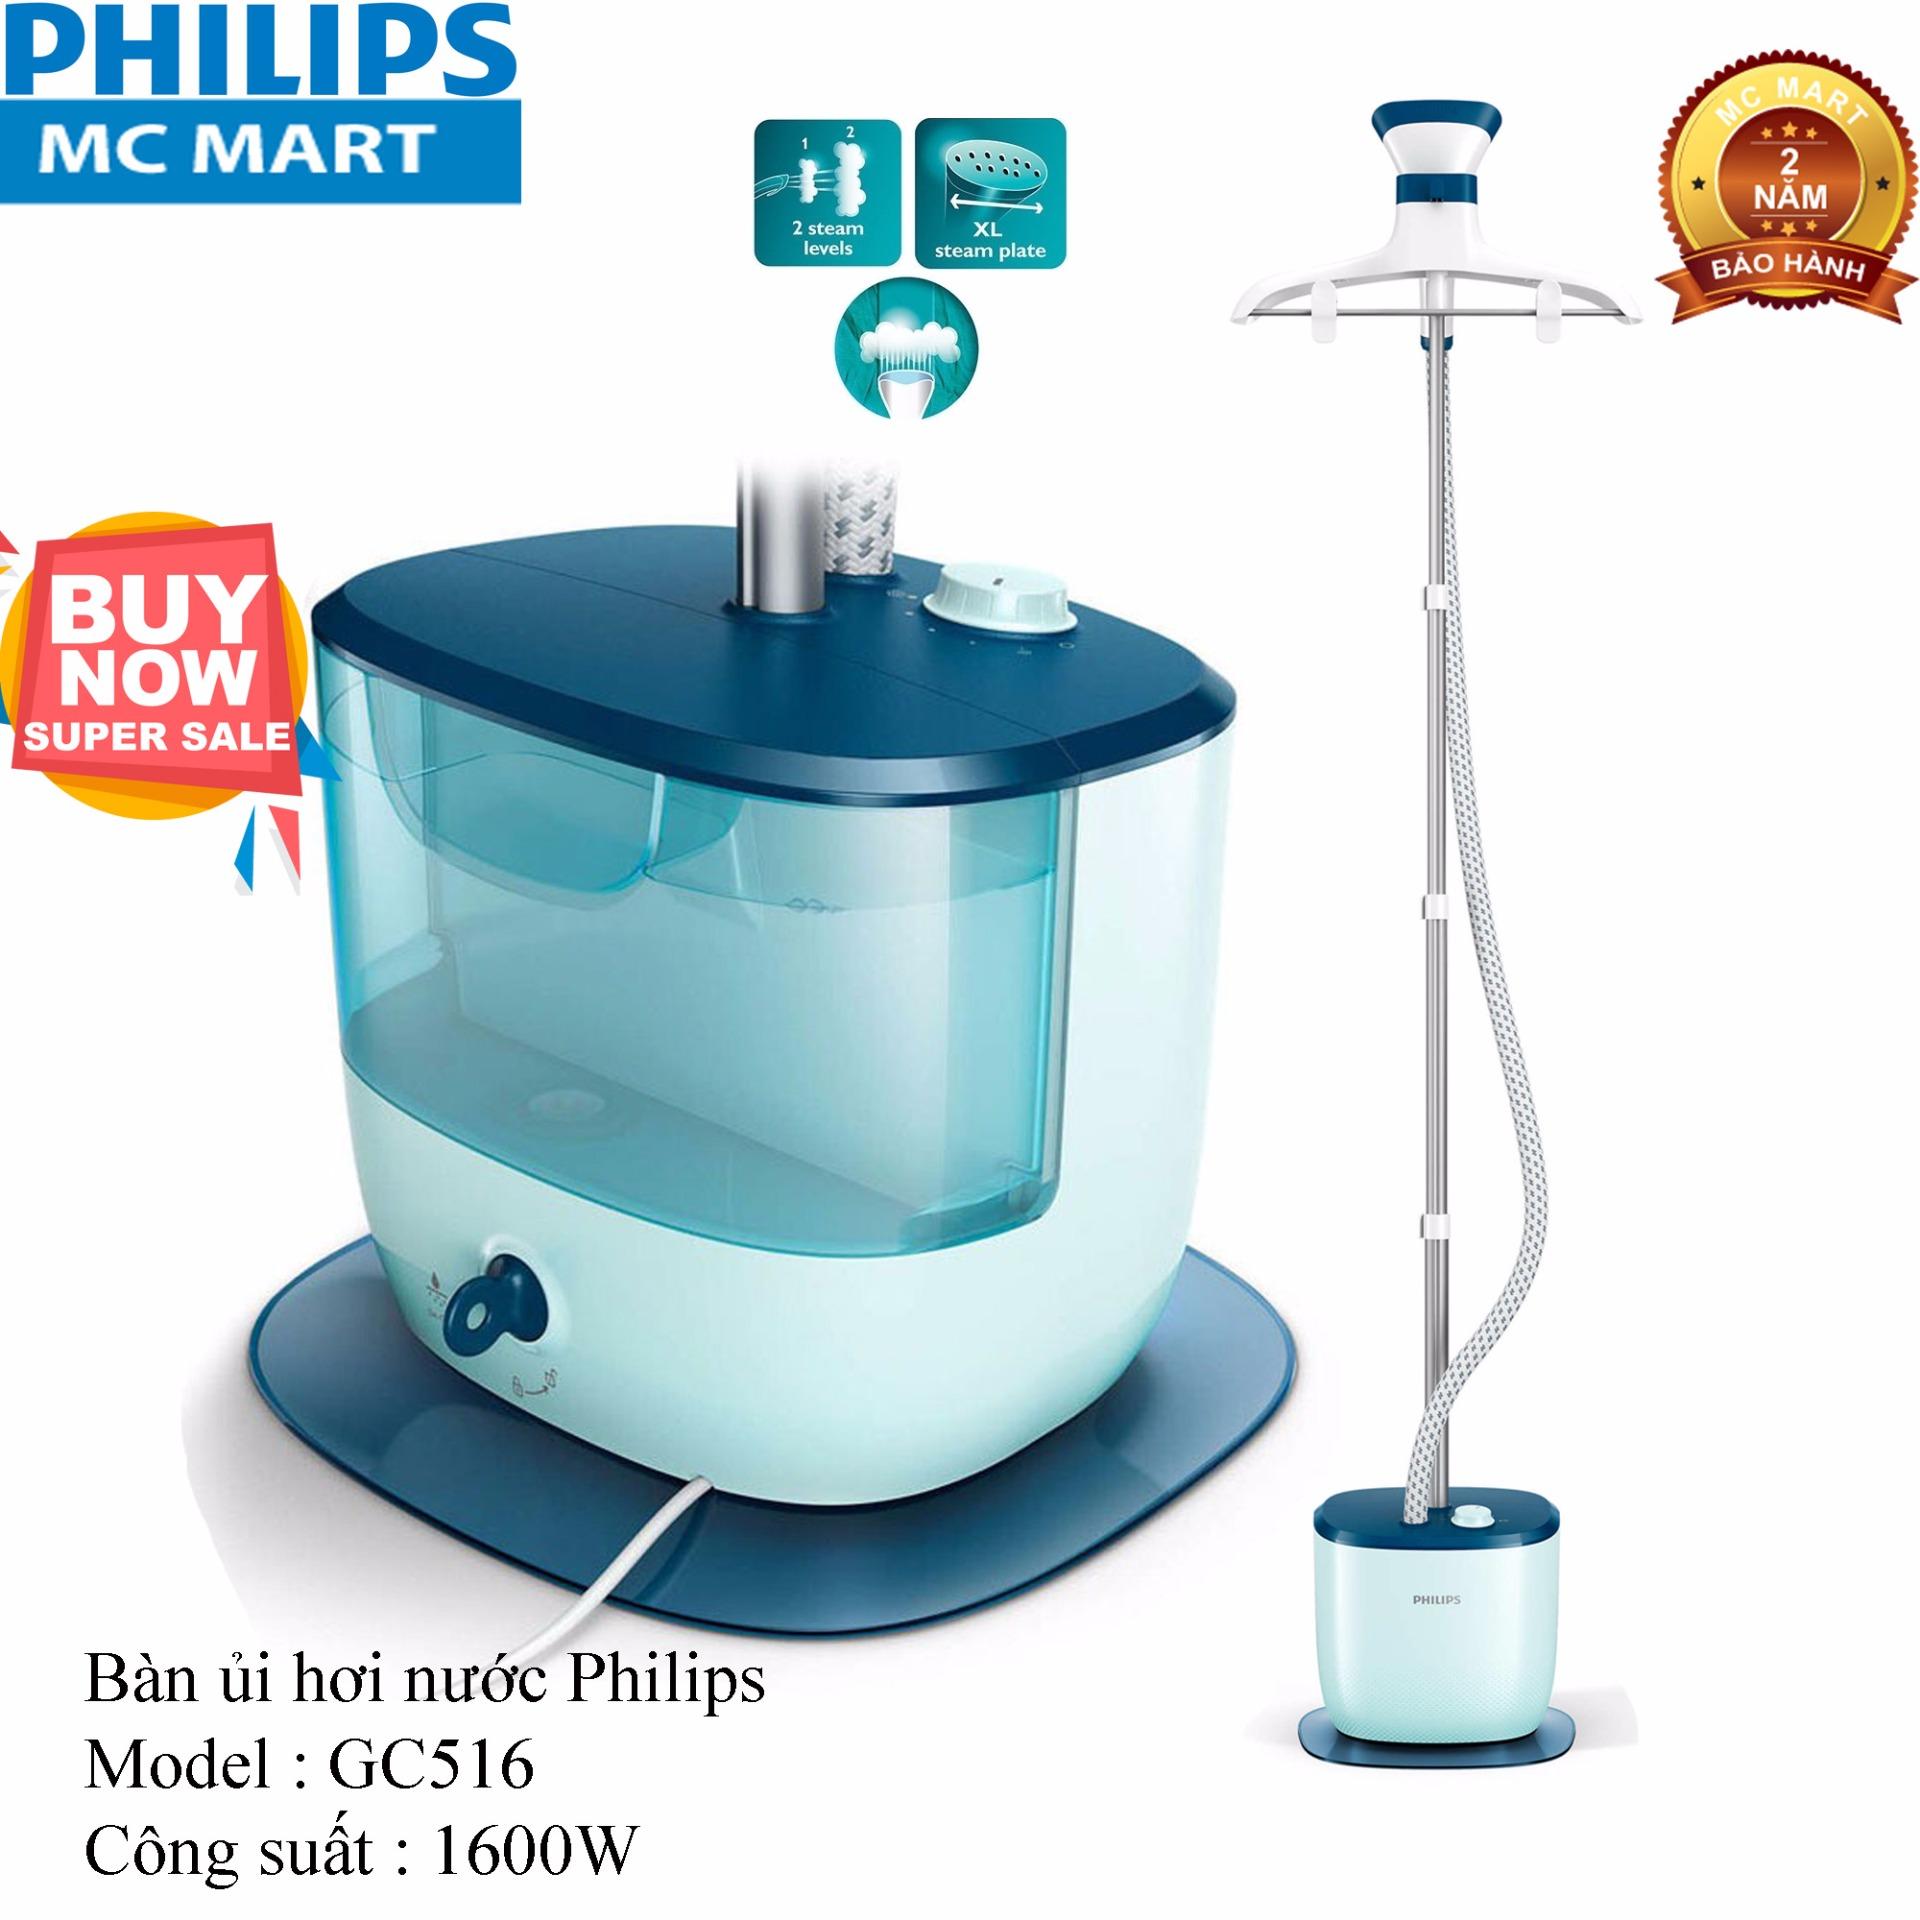 Bàn ủi hơi nước đứng Philips GC516 (Xanh phối trắng ) - Hàng nhập khẩu